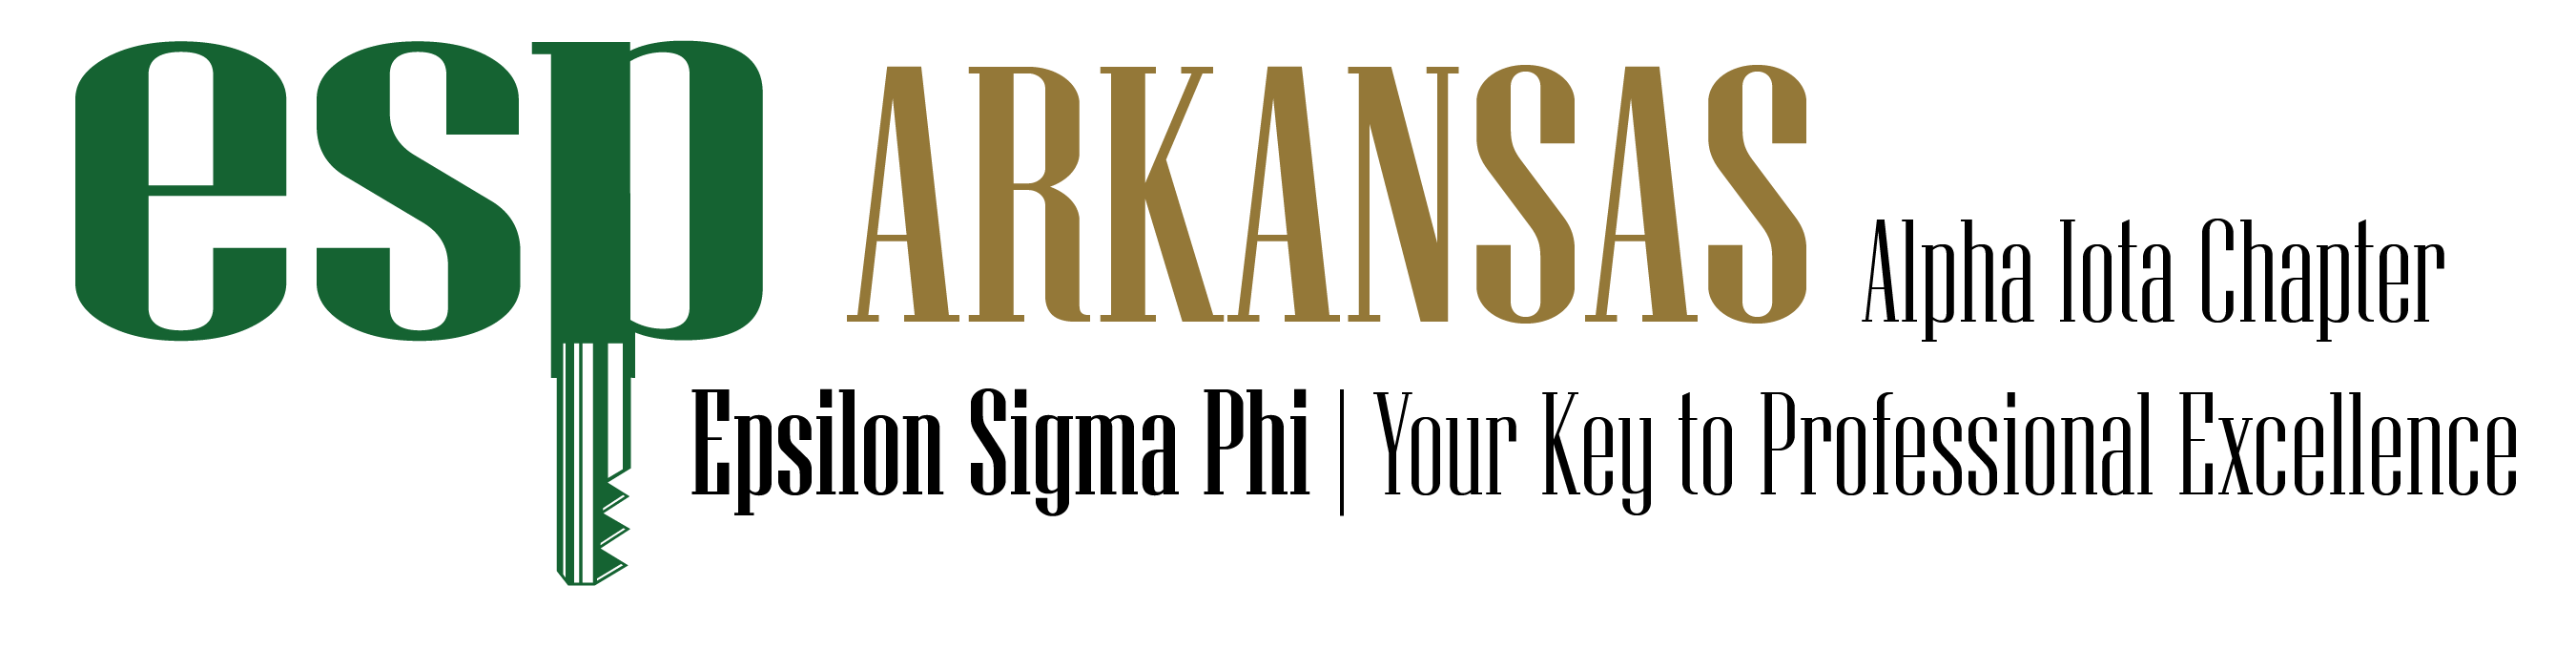 ESP Chapter Logo for Arkansas